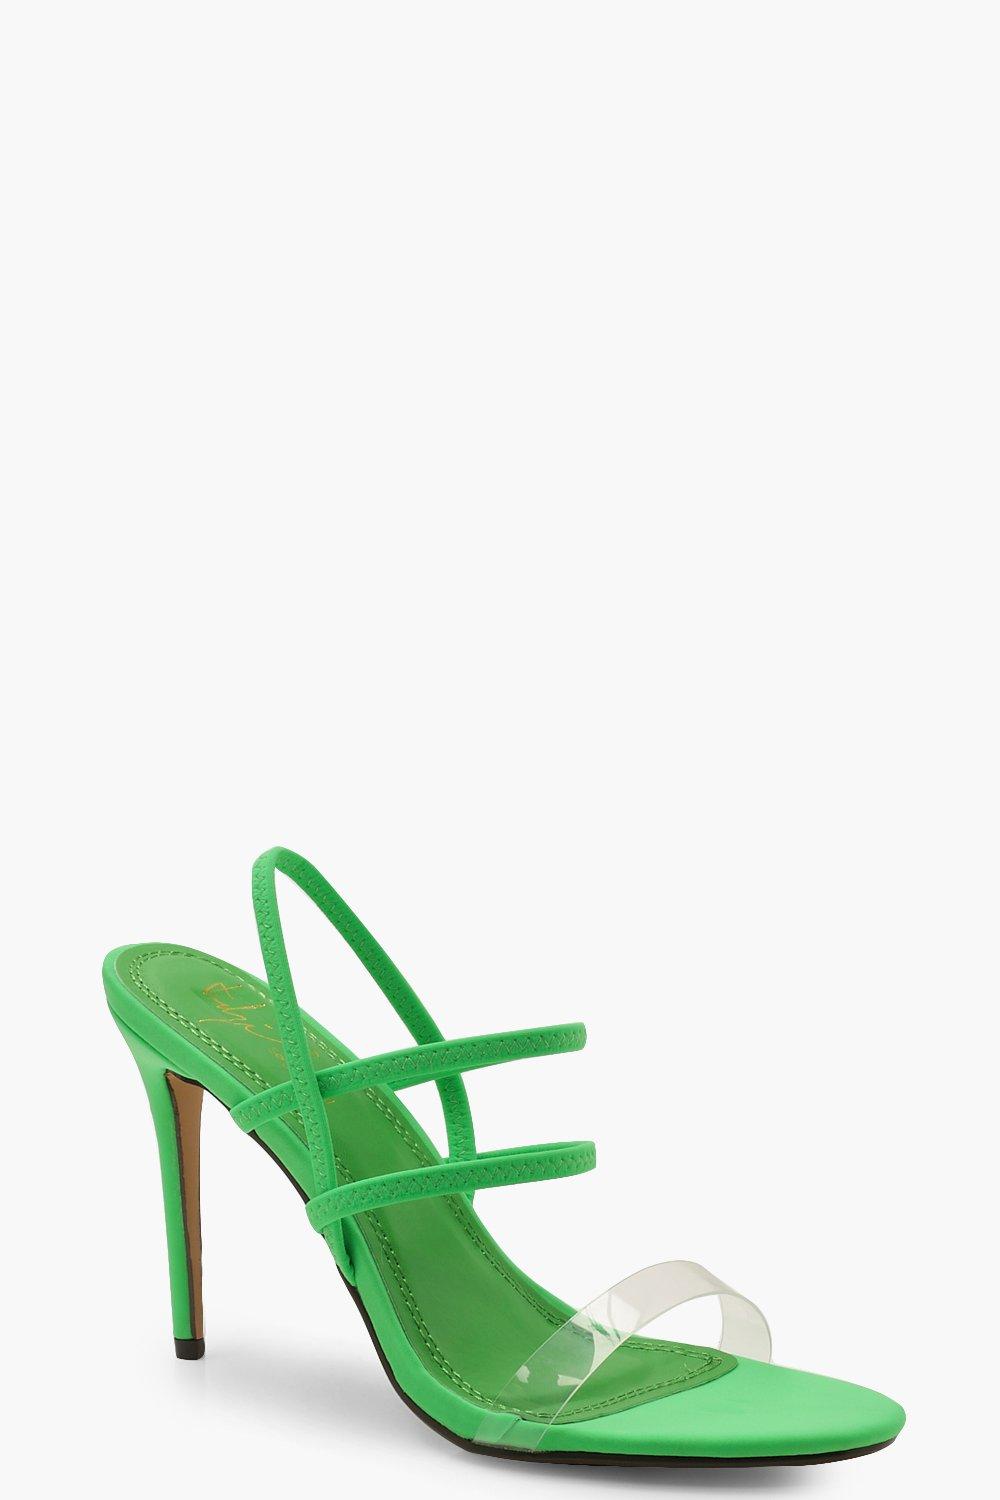 green neon heels